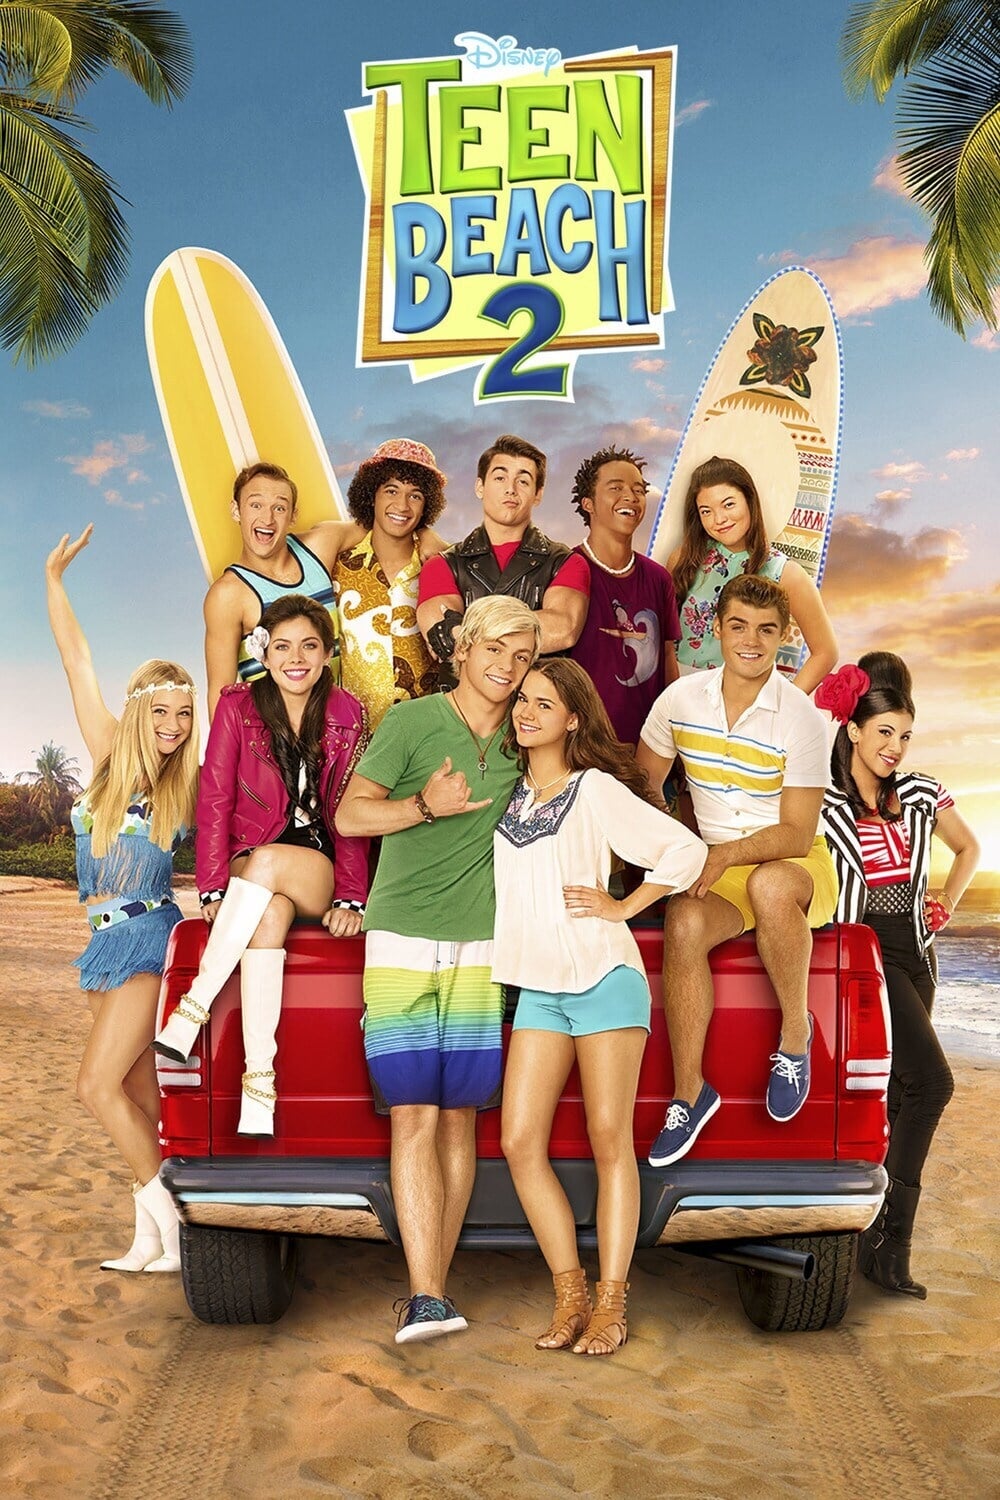 Teen Beach 2 [HD] (2015)